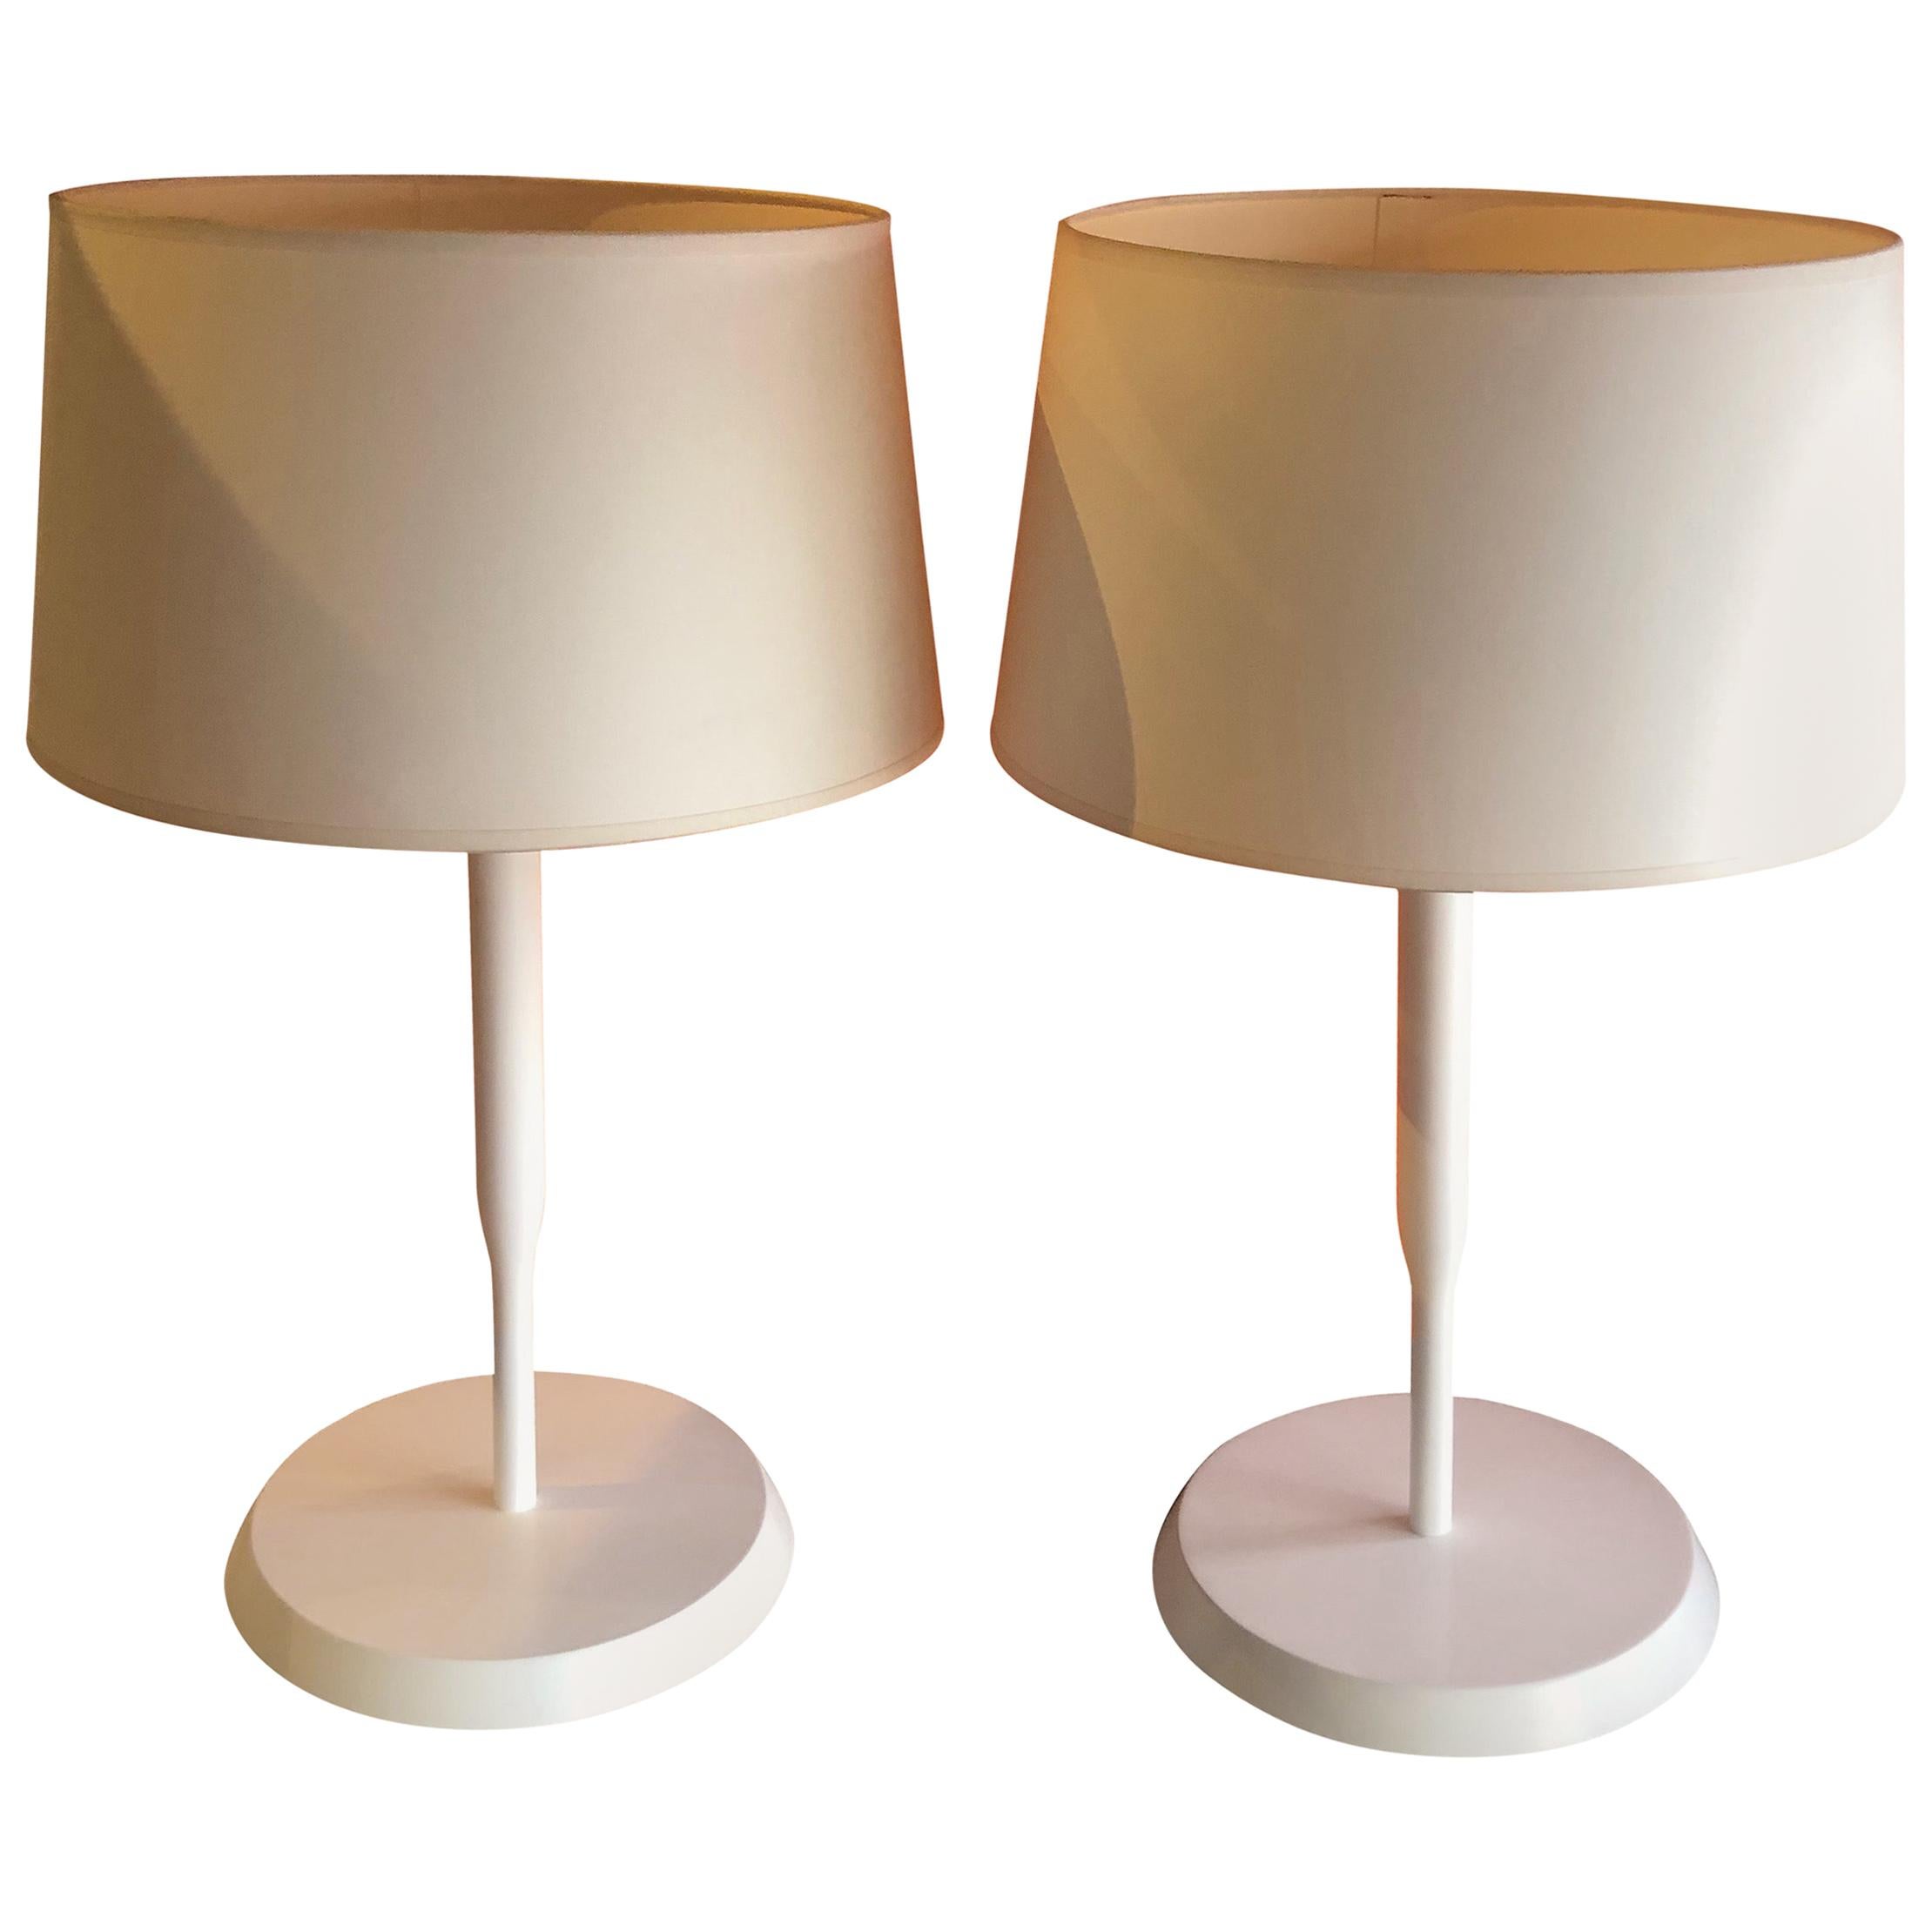 Pair of White "Dorset" Table Lamps by Eric Jourdan for Ligne Roset